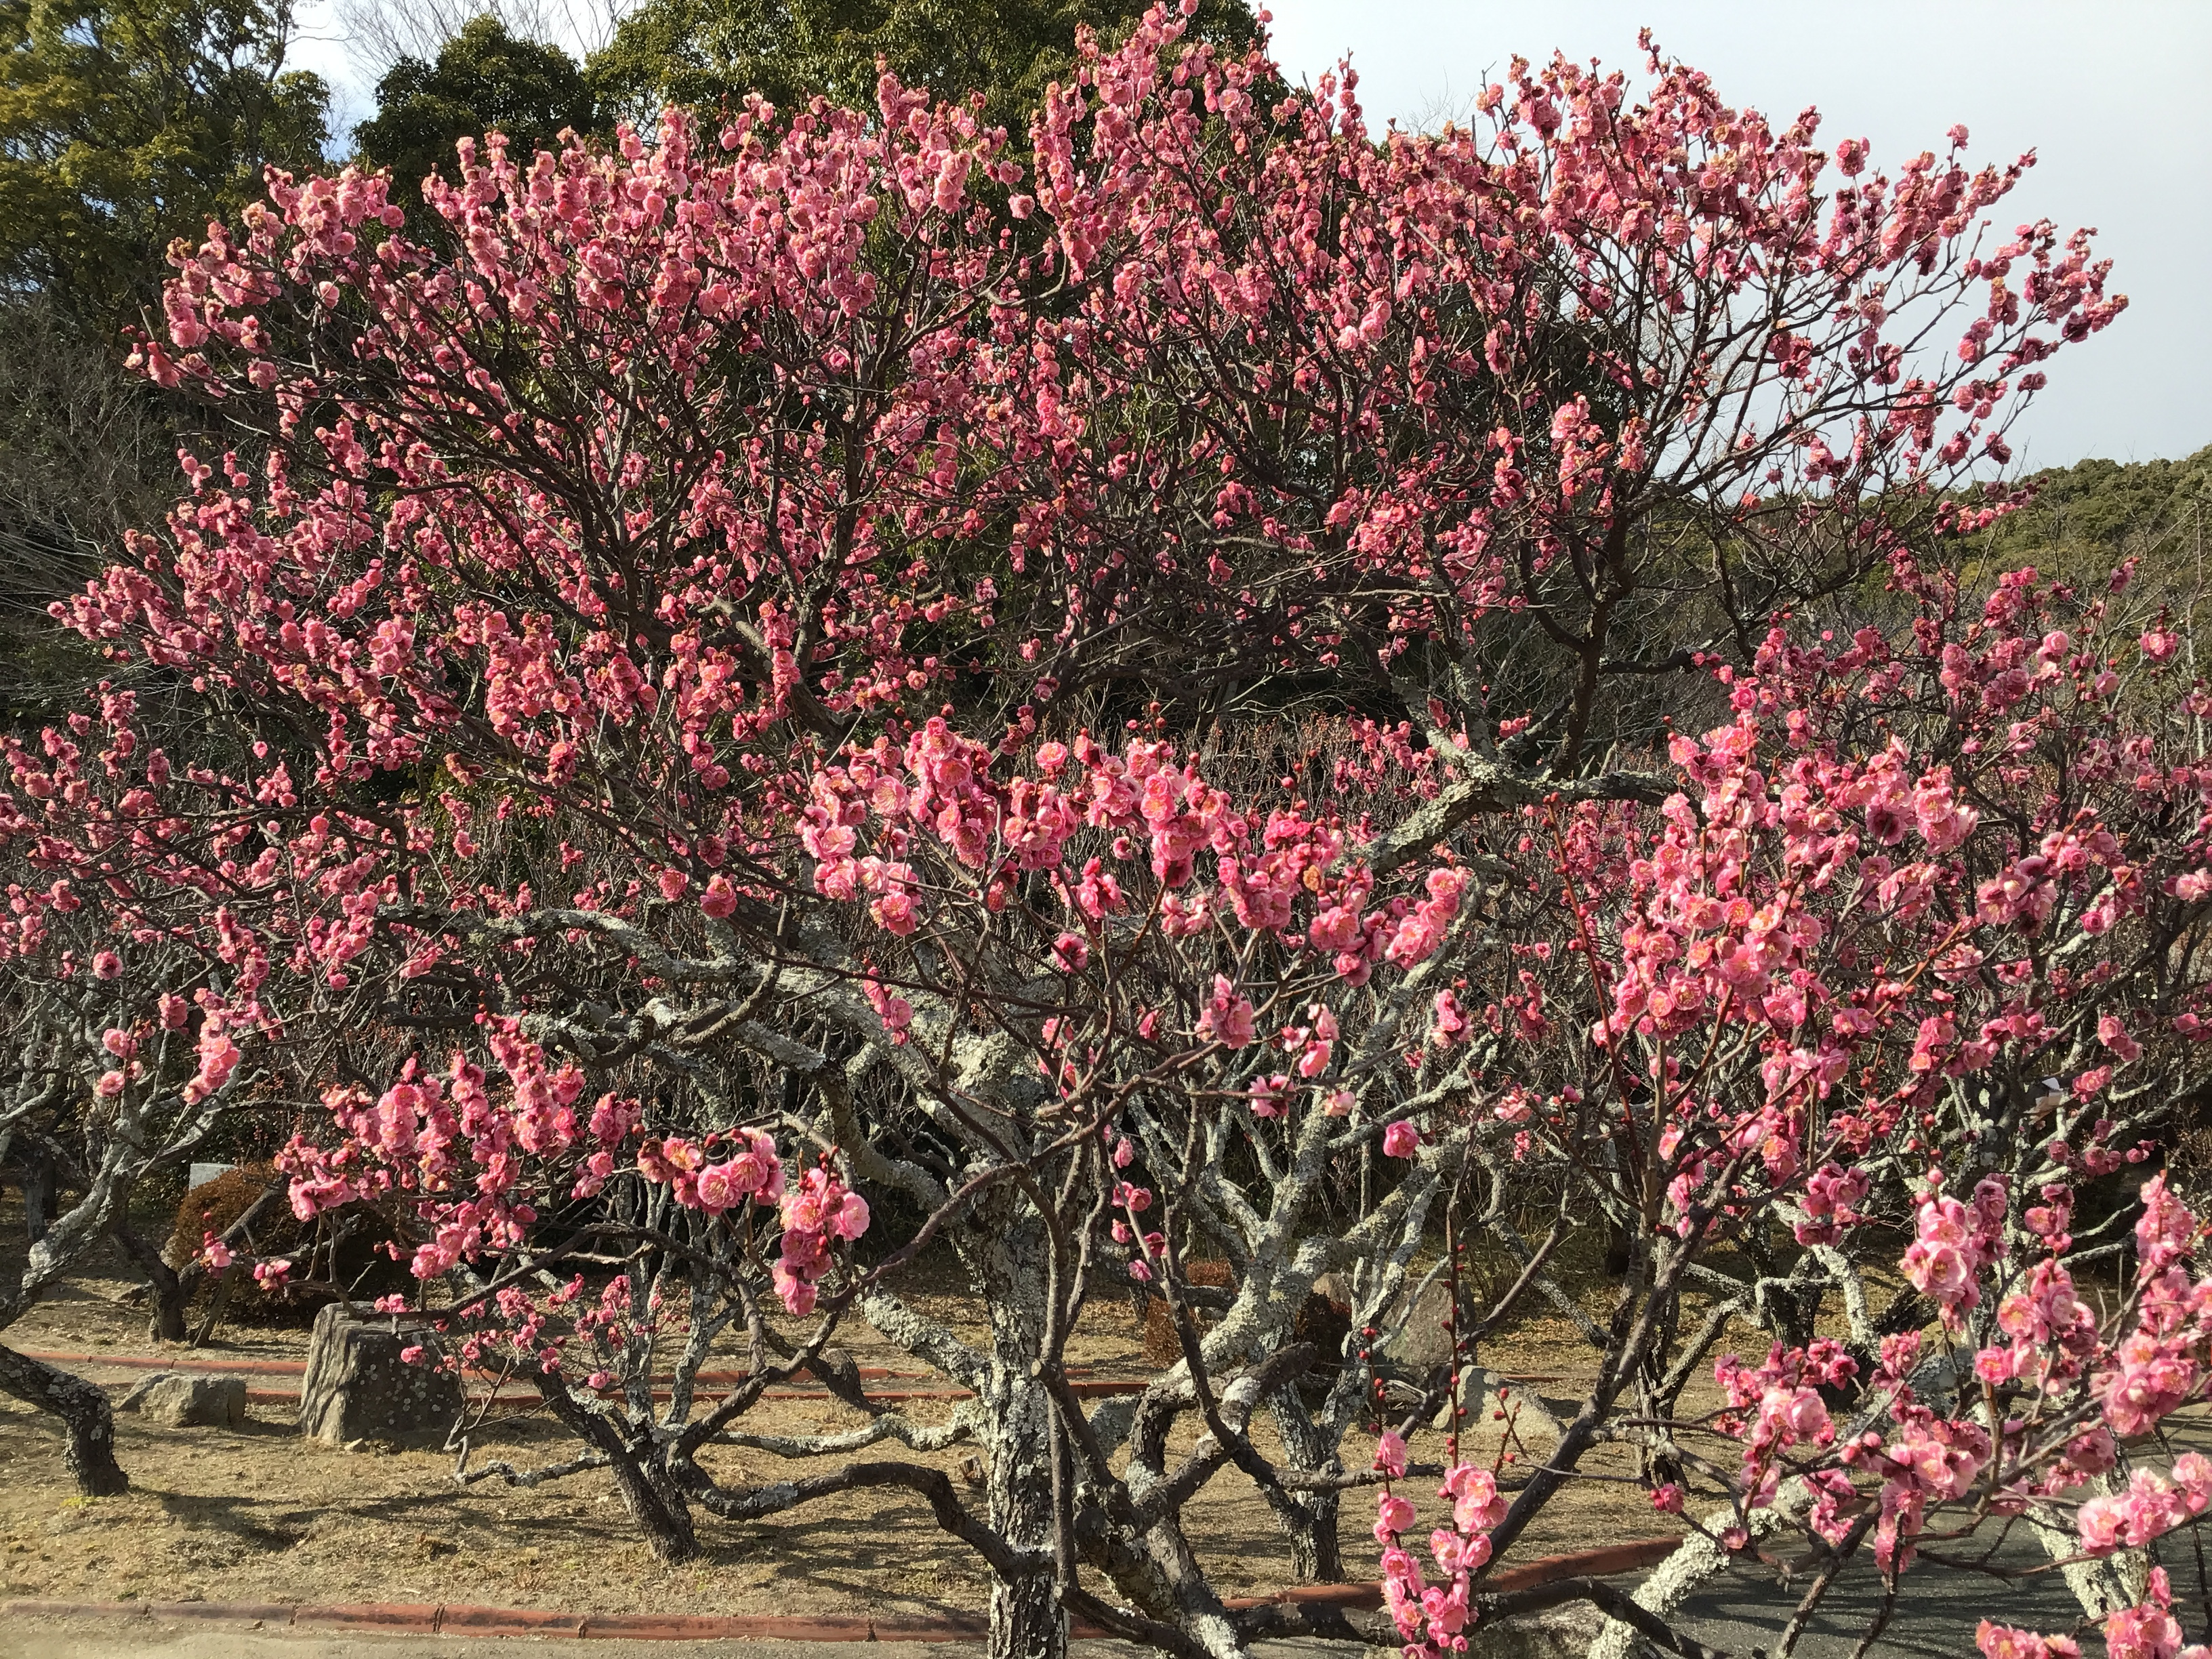 A plum blossom tree